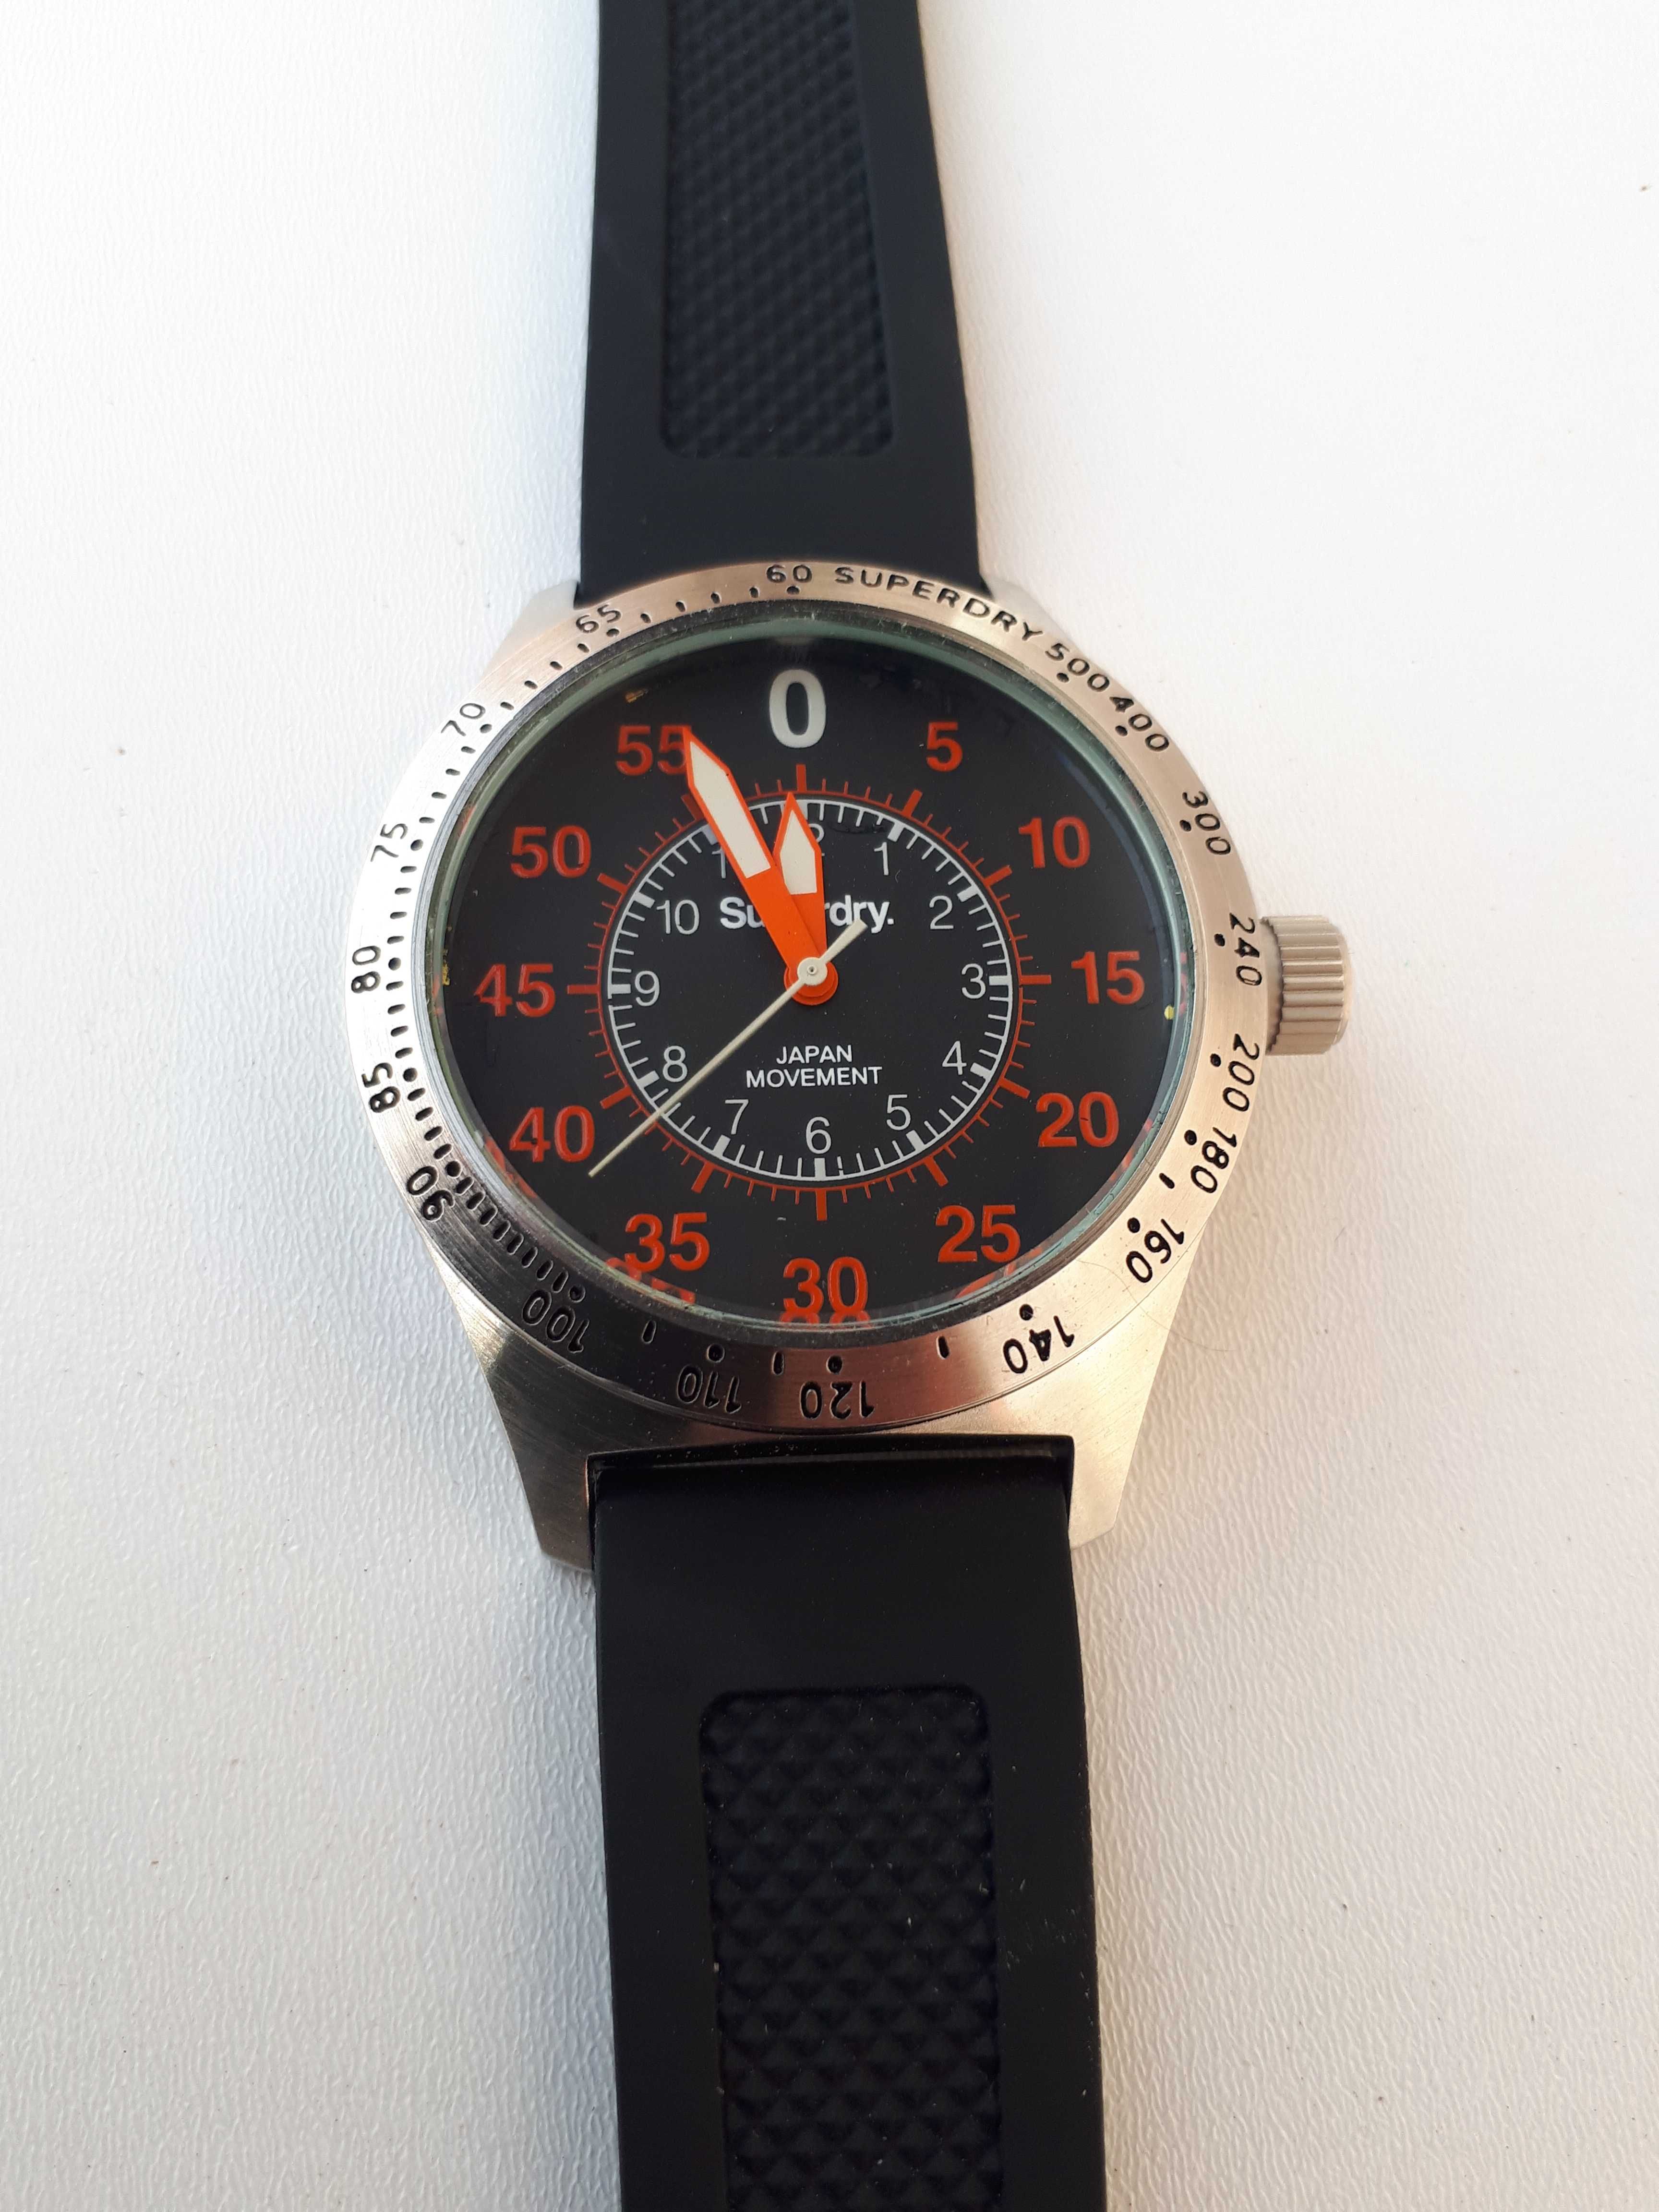 Superdry Professional Timepiece zegarek